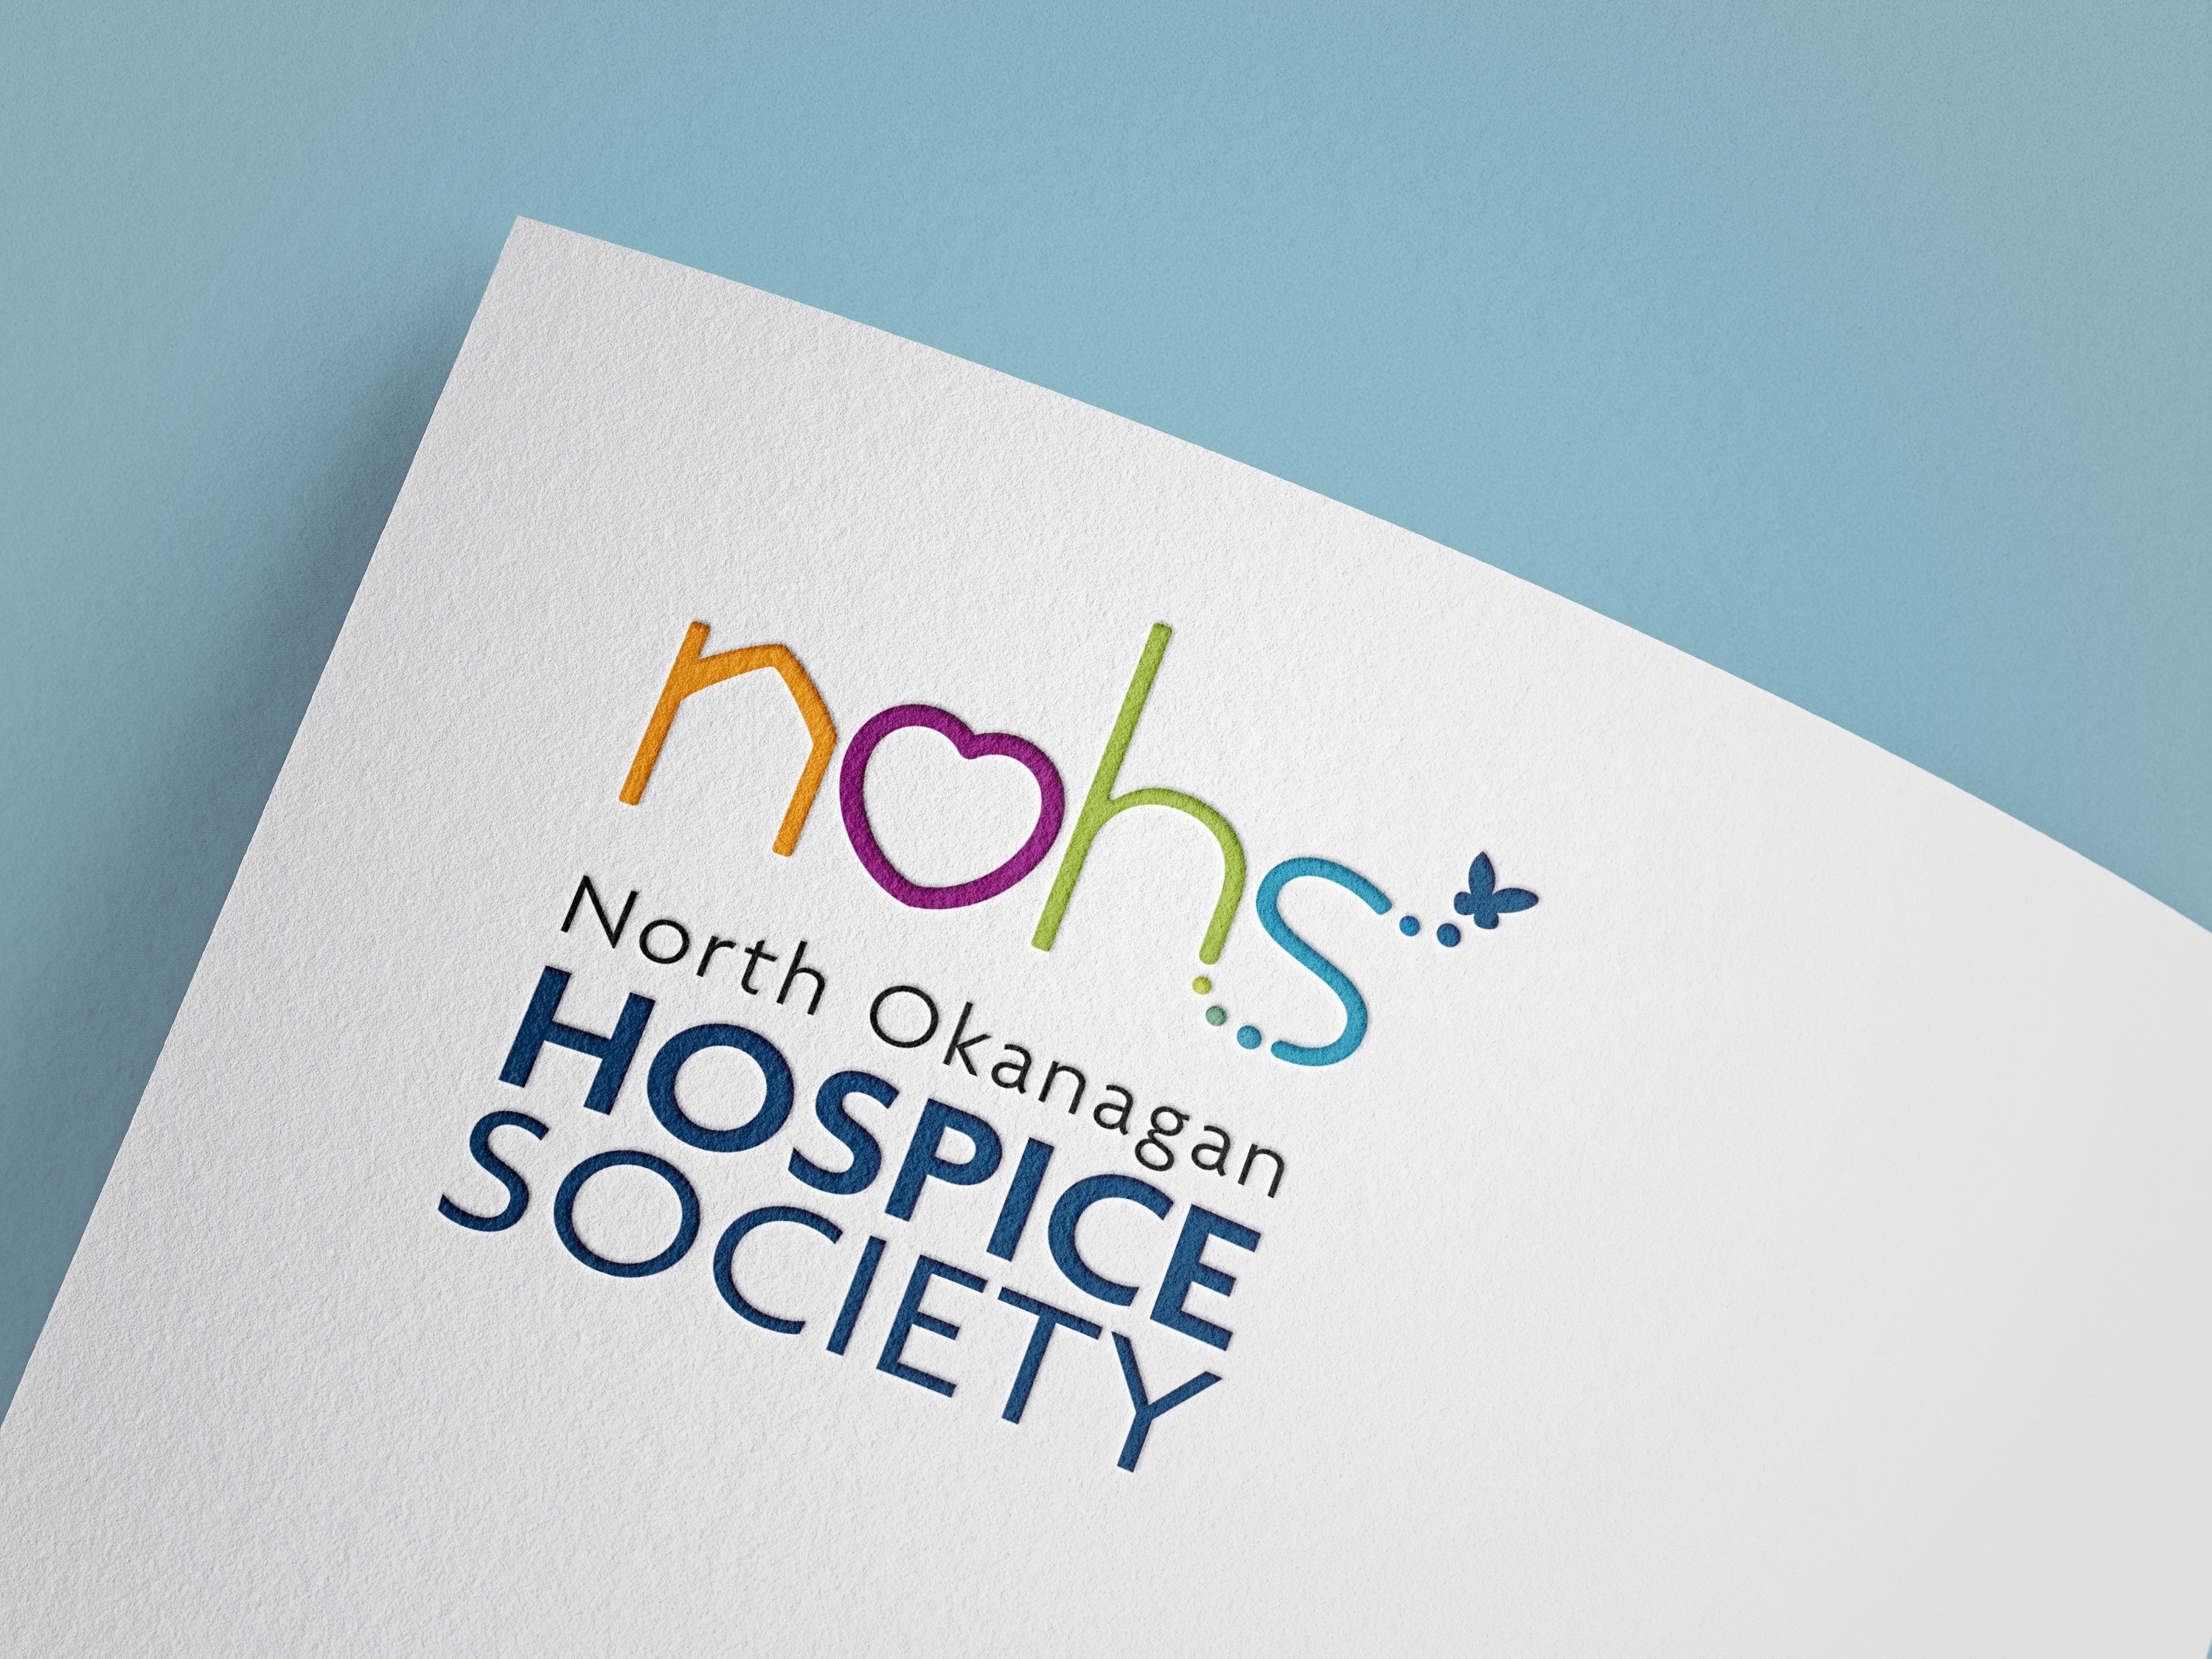 North Okanagan Hospice Society